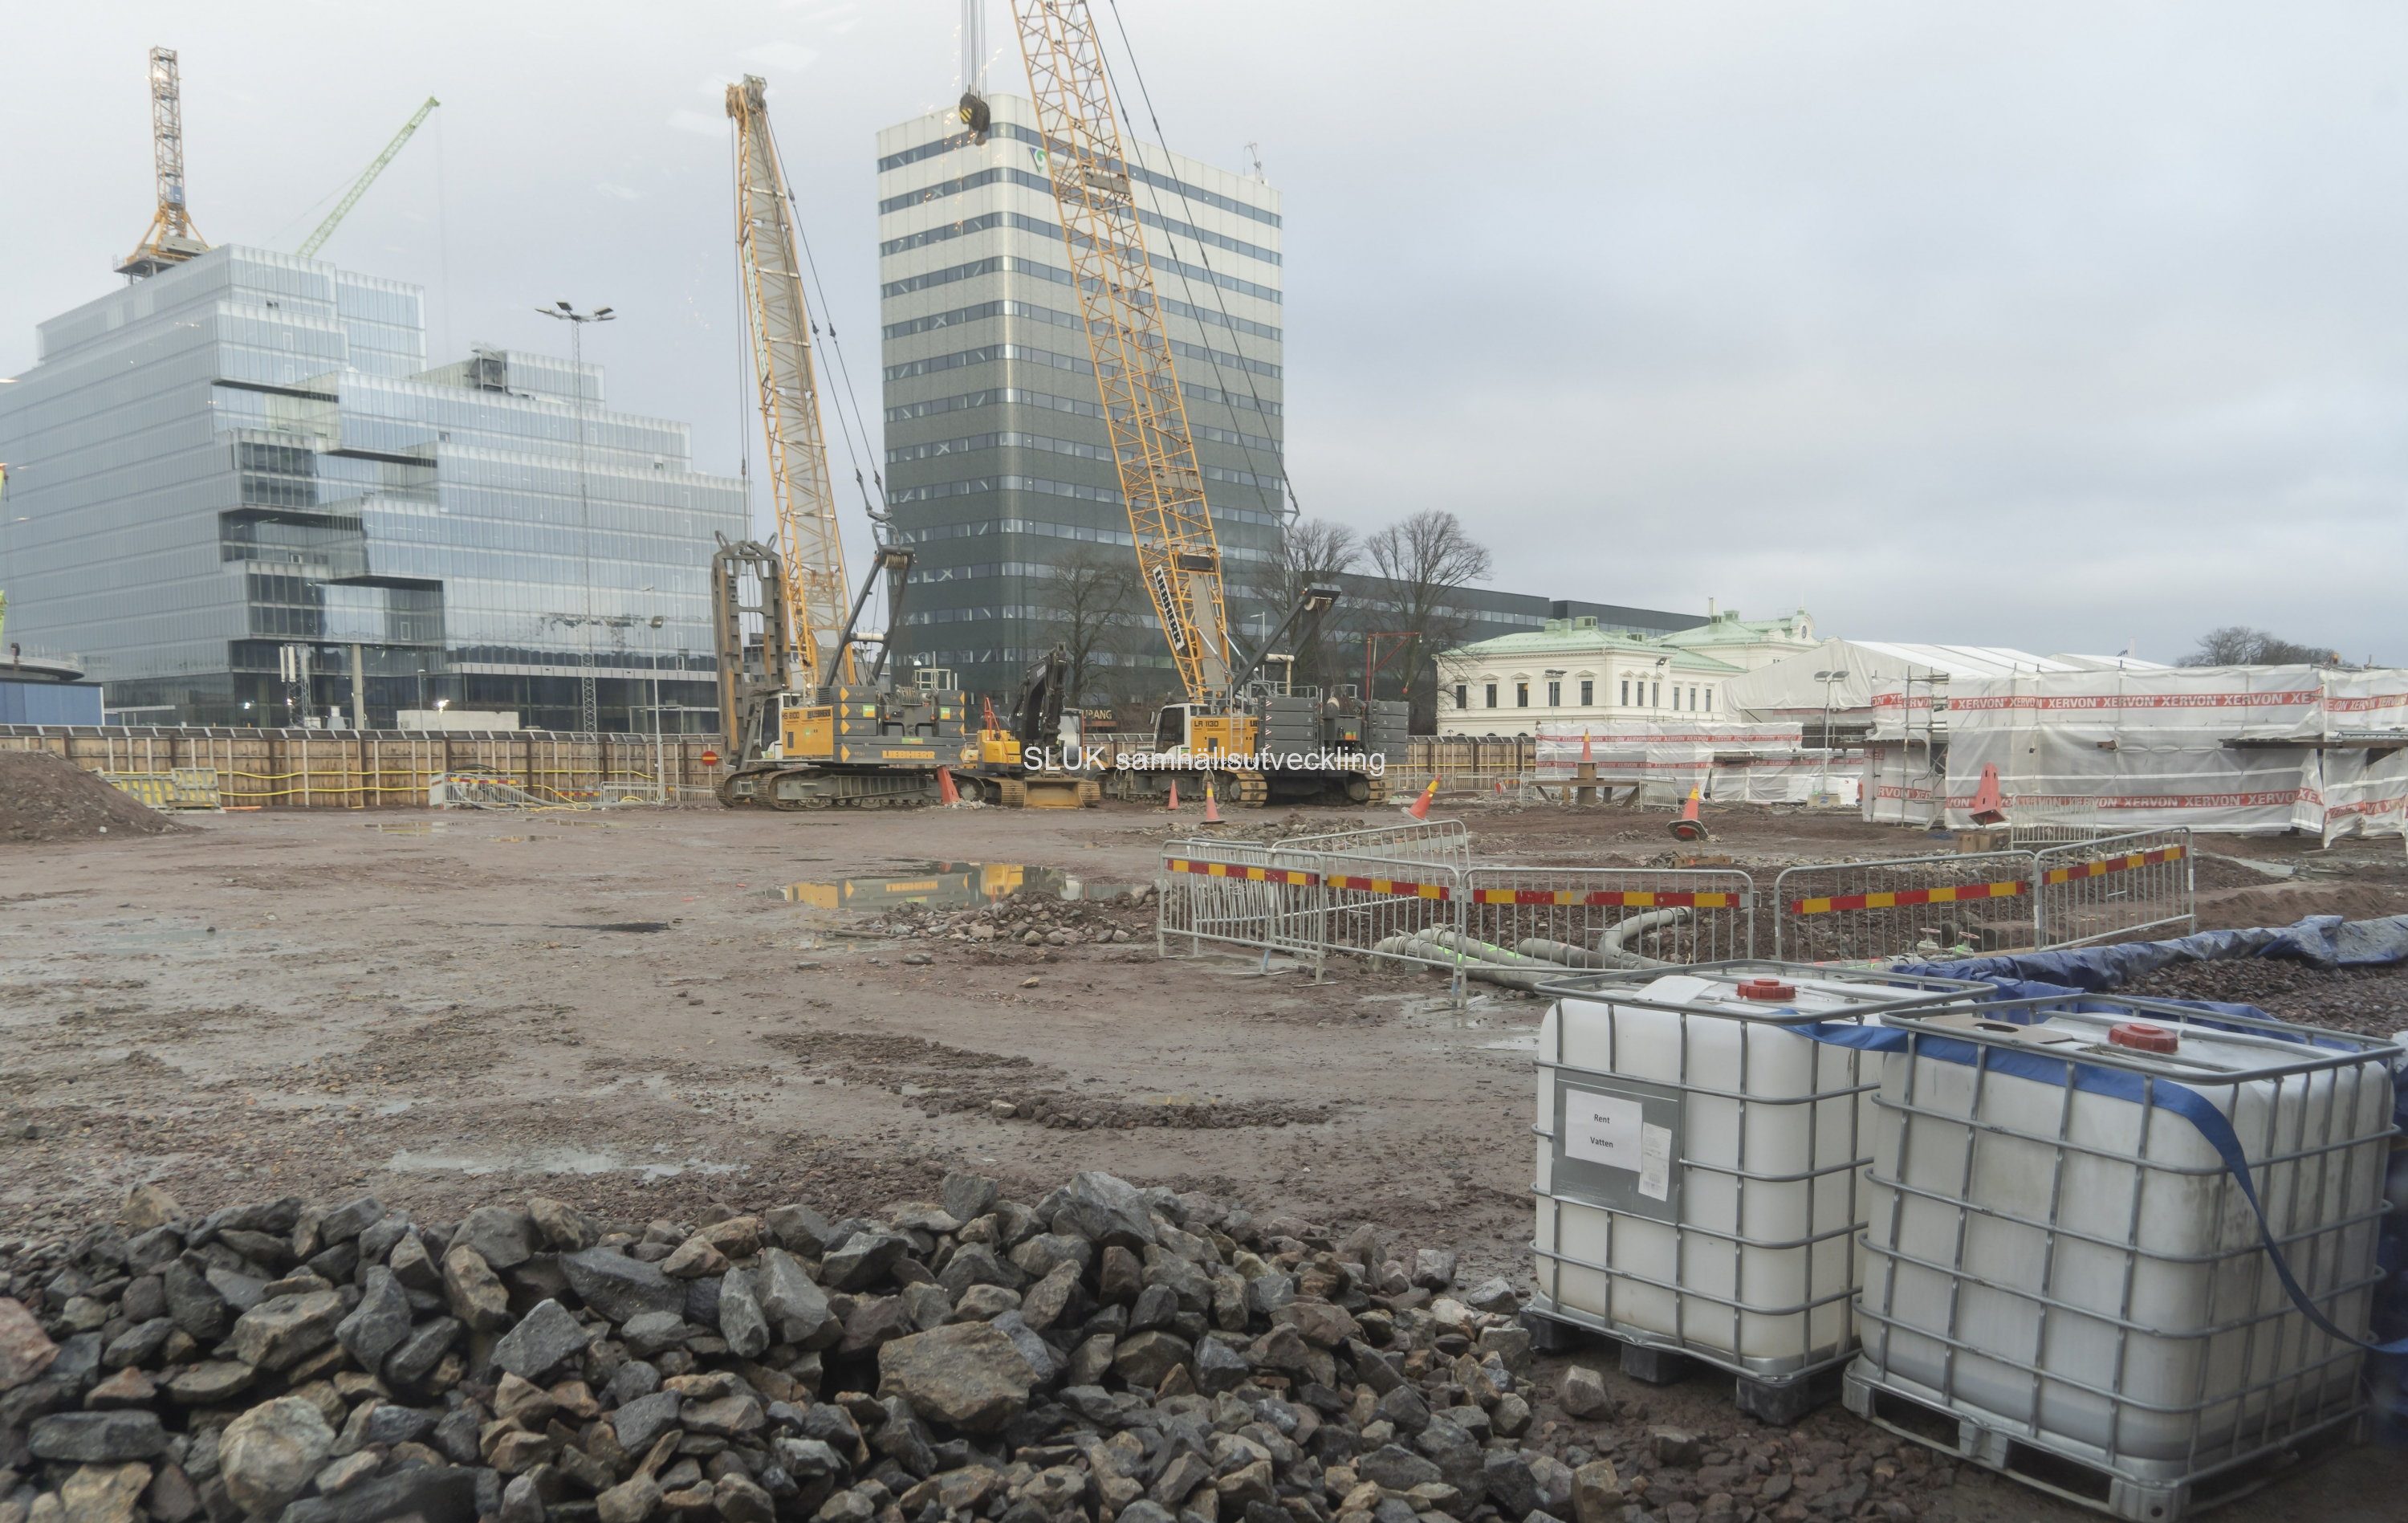 Vid Nils Ericsonsplatsen, där Västlänkens centrala terminal byggs, har anläggningsarbetena täckts. Nu kommer vi antagligen inte kunna se vad som händer, förrän stationen är färdigbyggd.